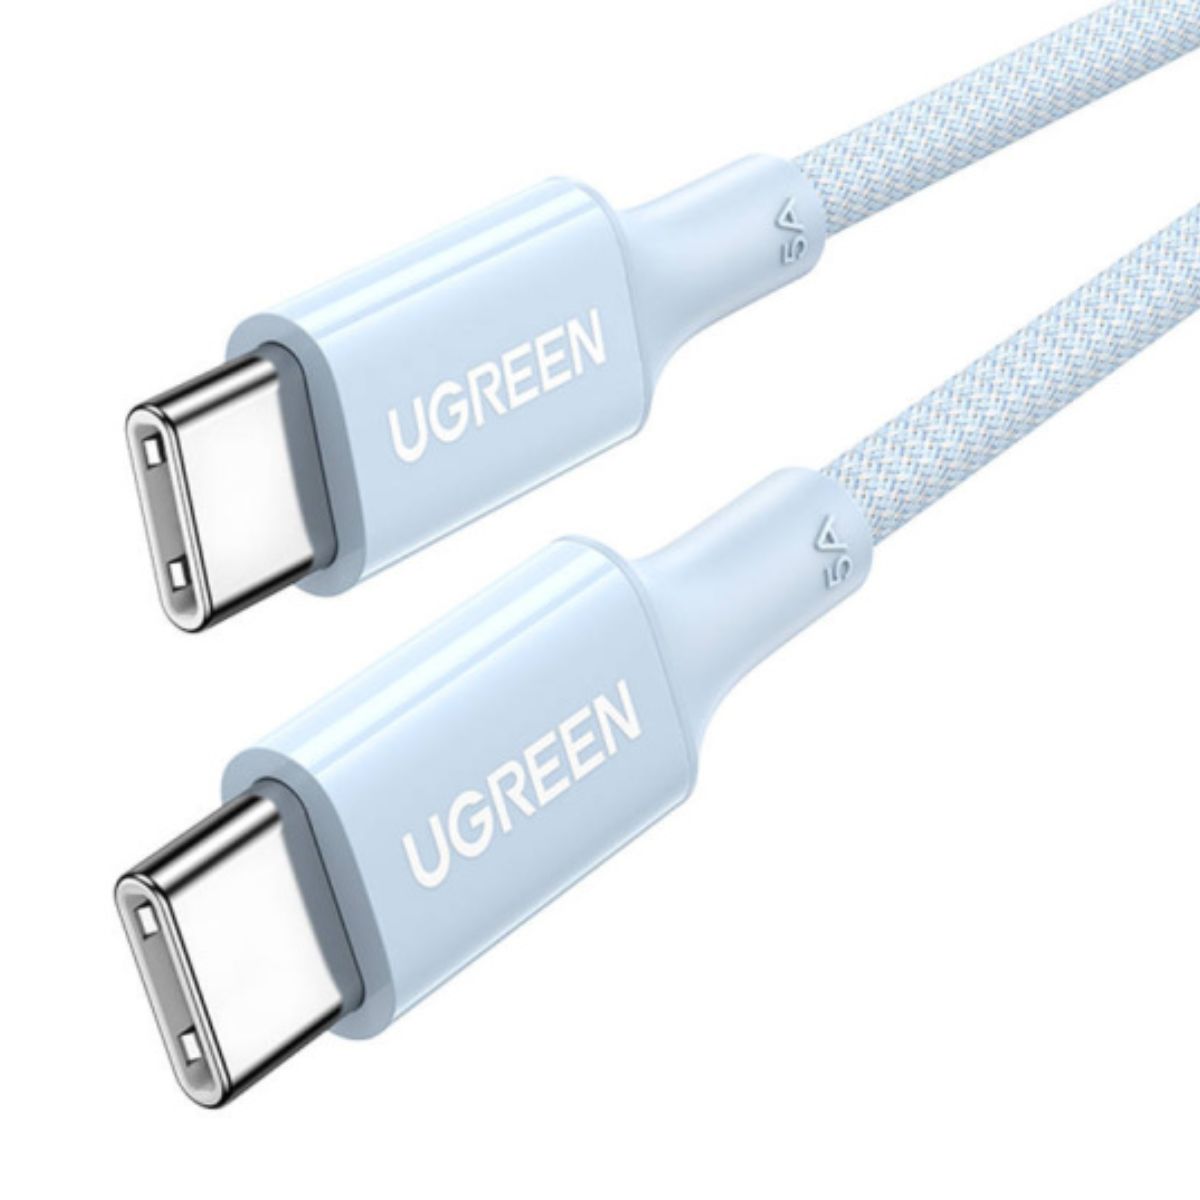 Cáp sạc nhanh silicone màu xanh 50cm USB type C Ugreen US557, 15270 hỗ trợ sạc nhanh 5A, tốc độ truyền 480Mbps